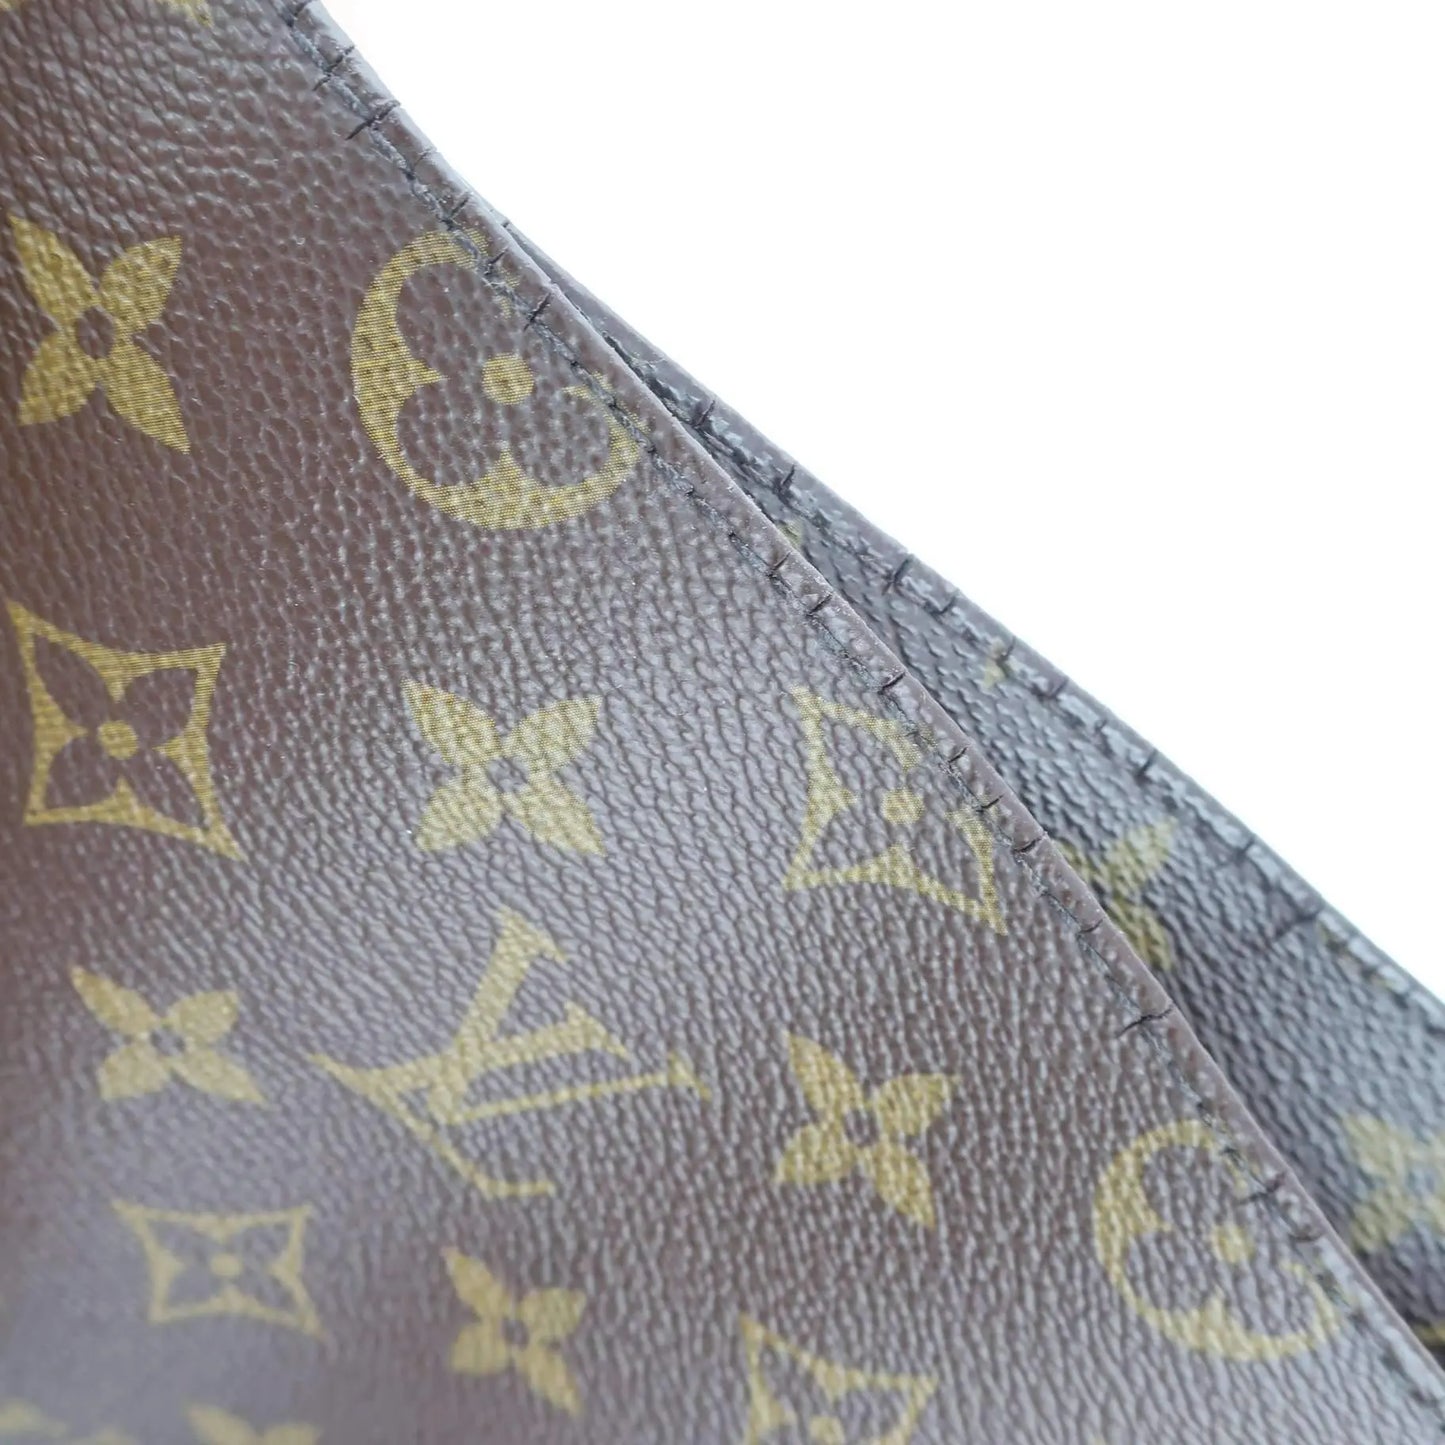 Load image into Gallery viewer, Louis Vuitton Louis Vuitton Metis Hobo Monogram Bag LVBagaholic
